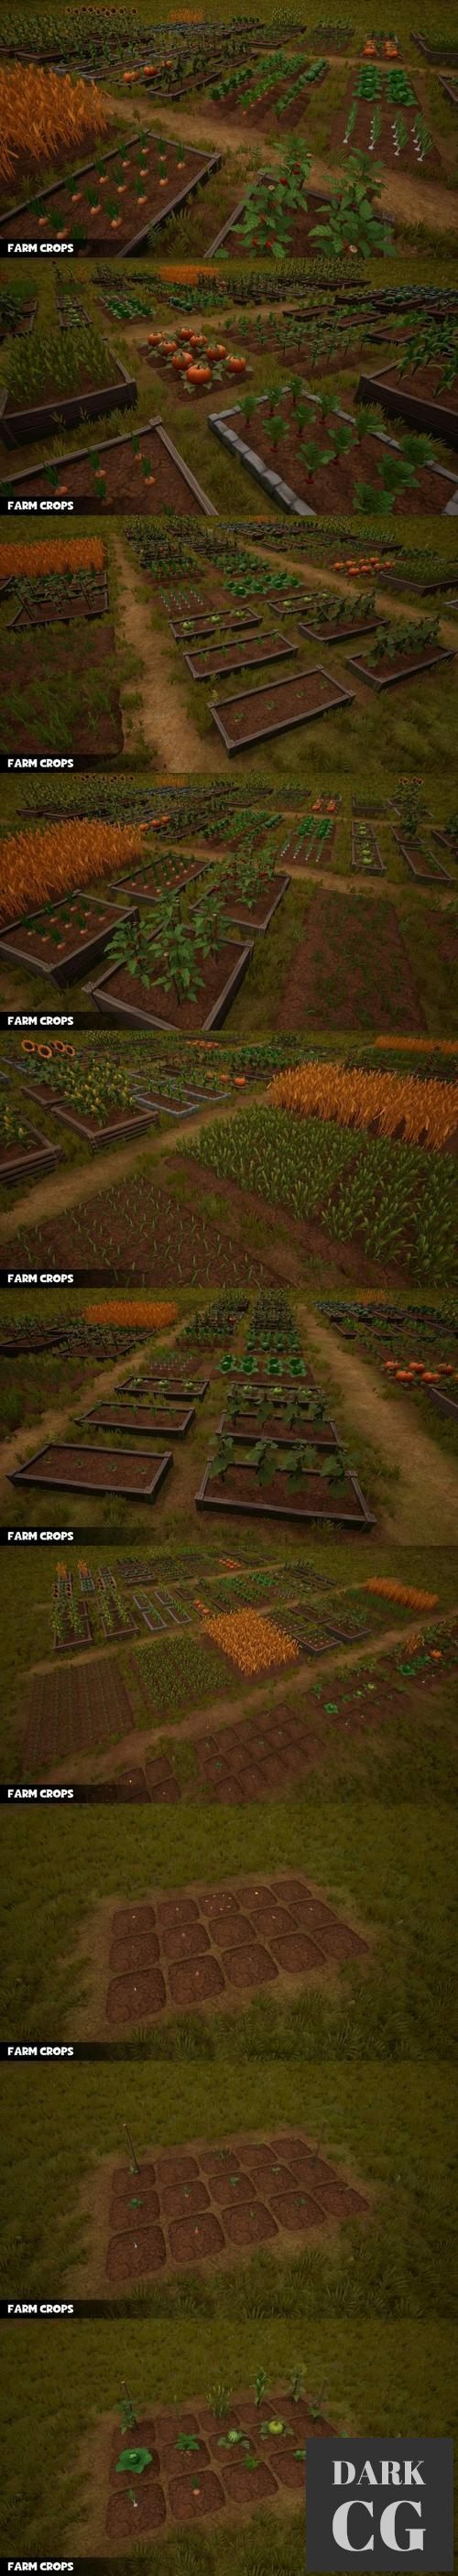 Unreal Engine Farm Crops